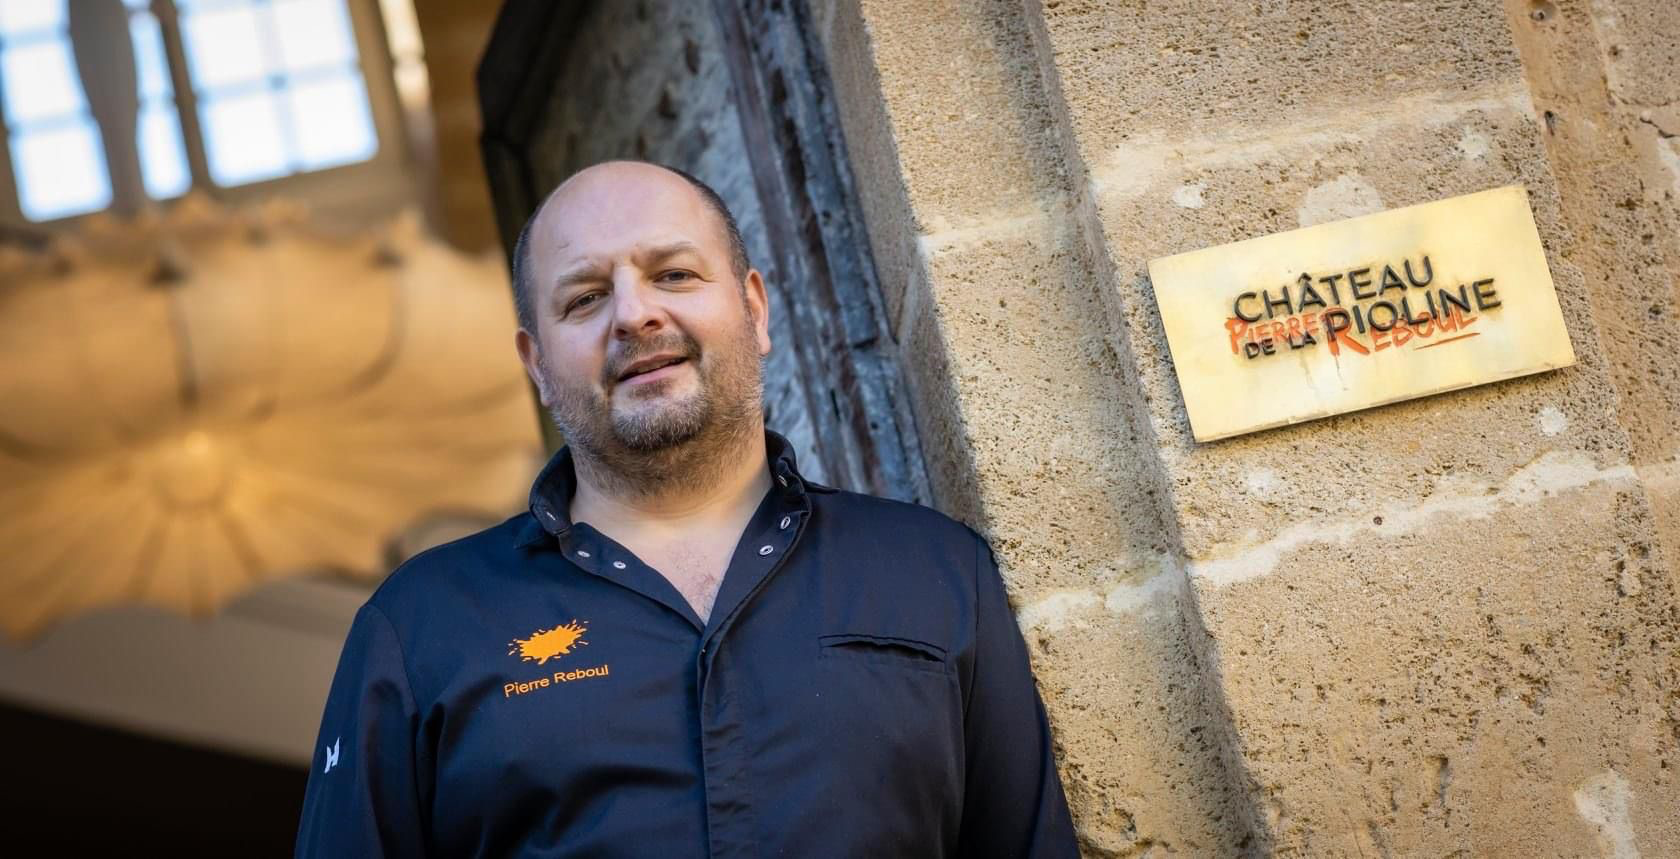 Pierre Reboul, chef étoilé pour une cuisine "créative et récréative" au Château de la Pioline, aux portes d'Aix-en-Provence. (CHATEAU DE LA PIOLINE)